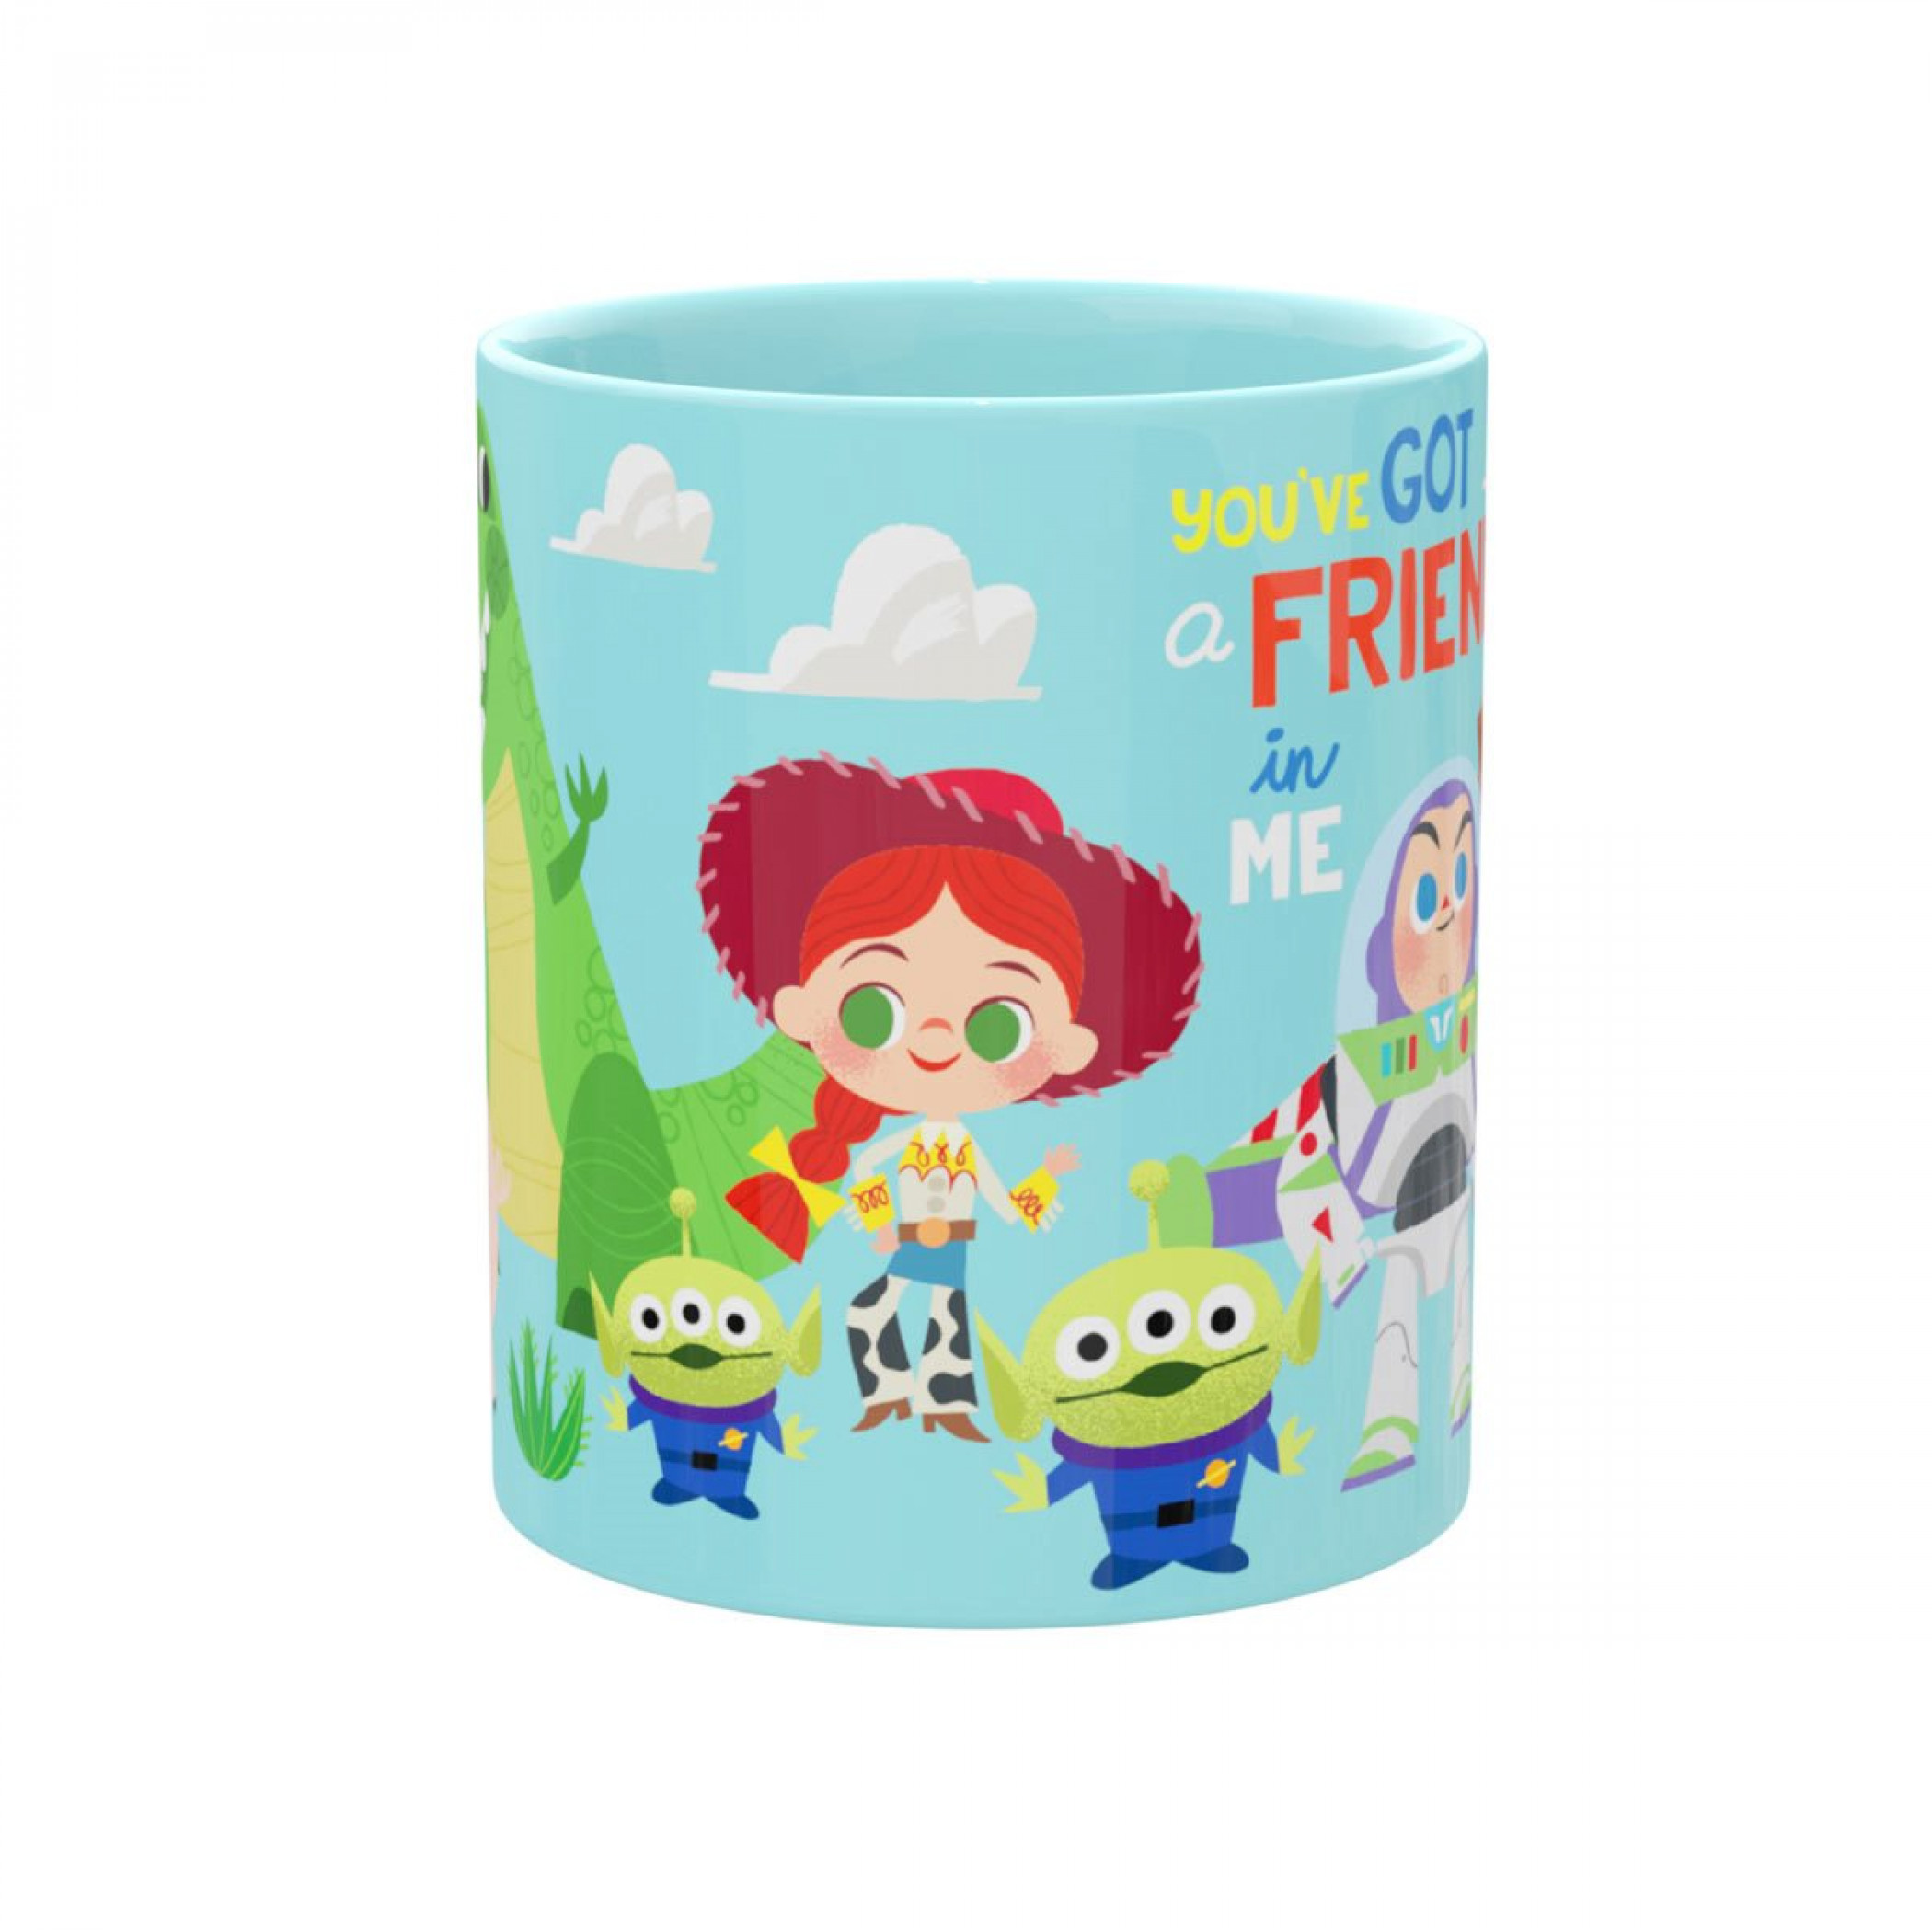 Toy Story You Got a Friend 11oz Ceramic Mug